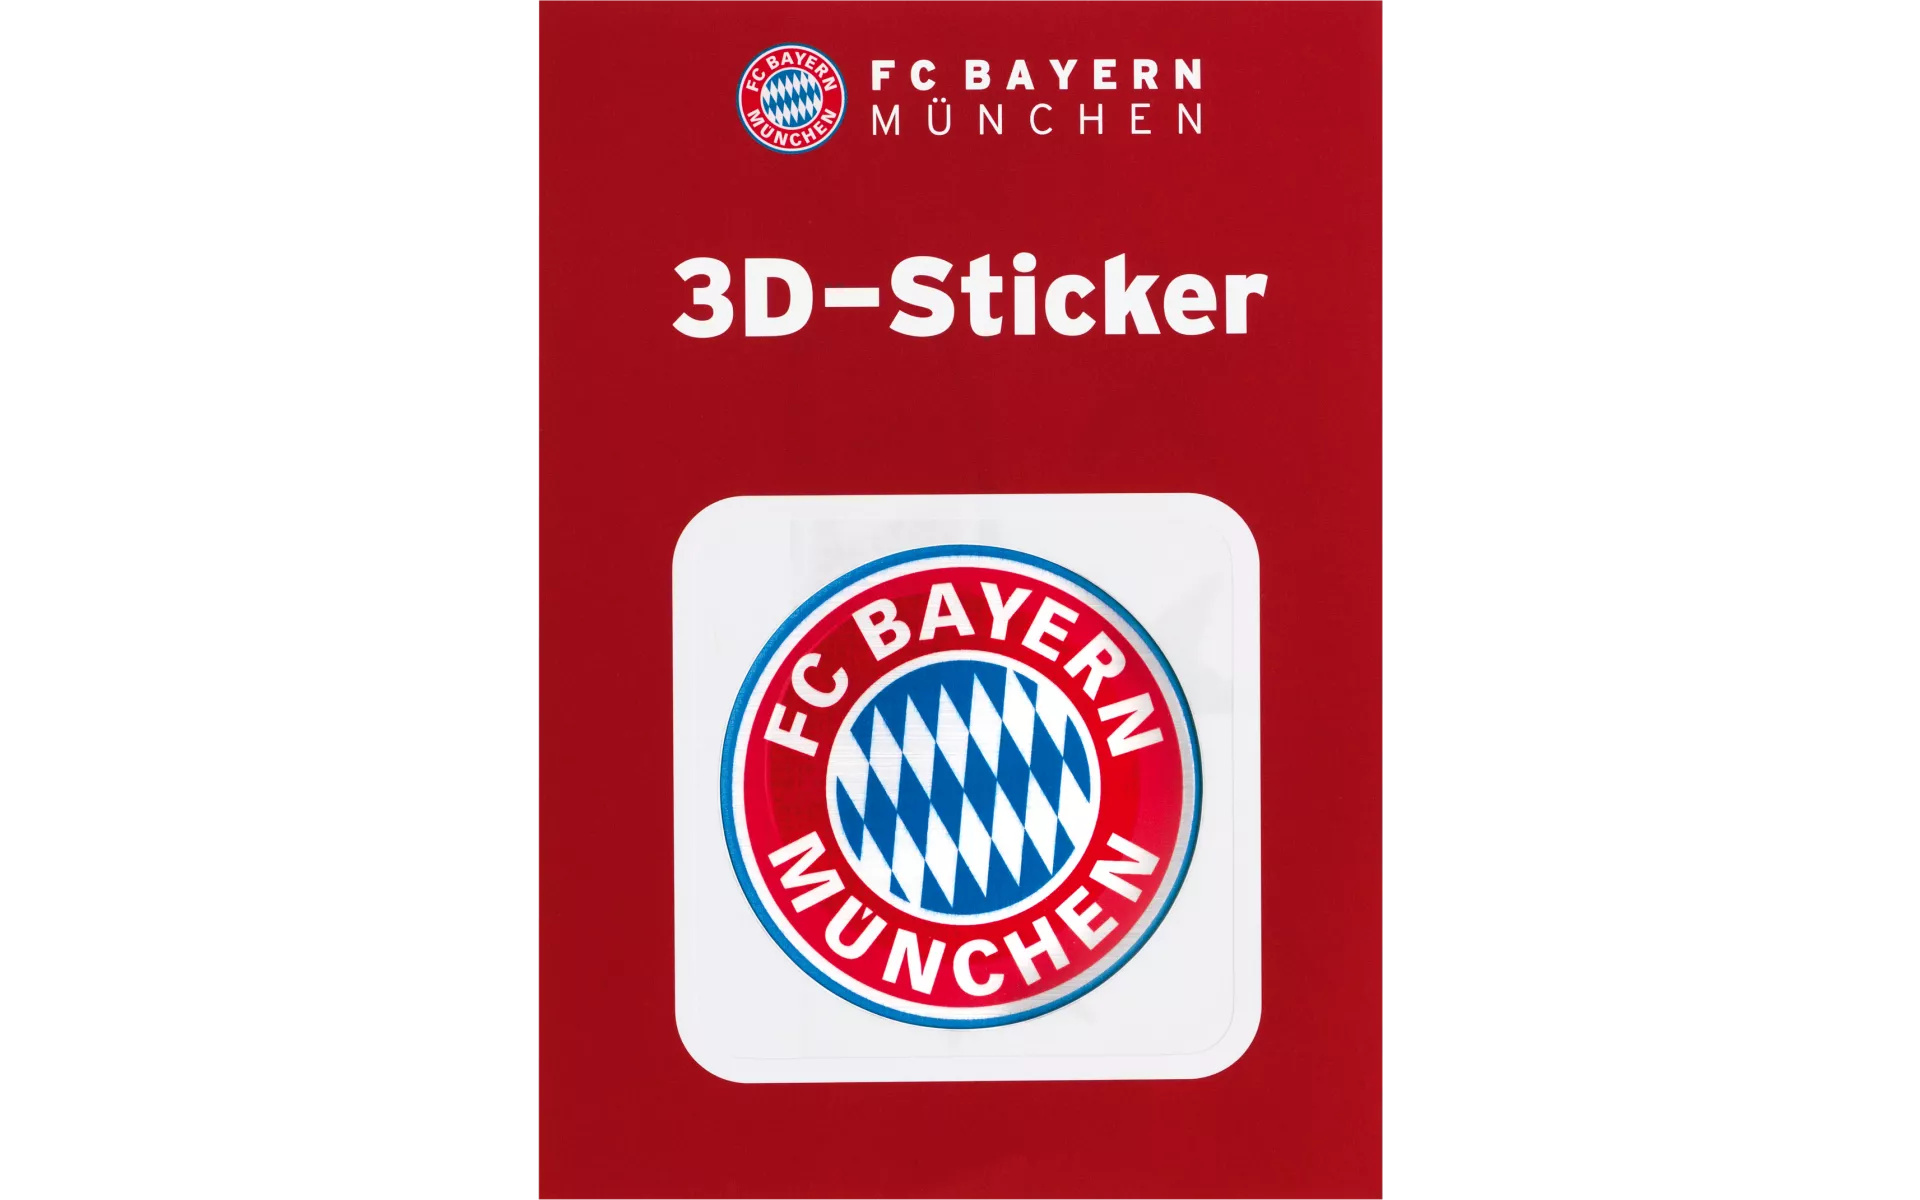 gratis Sticker München forever /etiqueta engomada Autoaufkleber FCB autocollant 3D Sticker Sticker 3D Aufkleber Logo schwarz FC Bayern München 